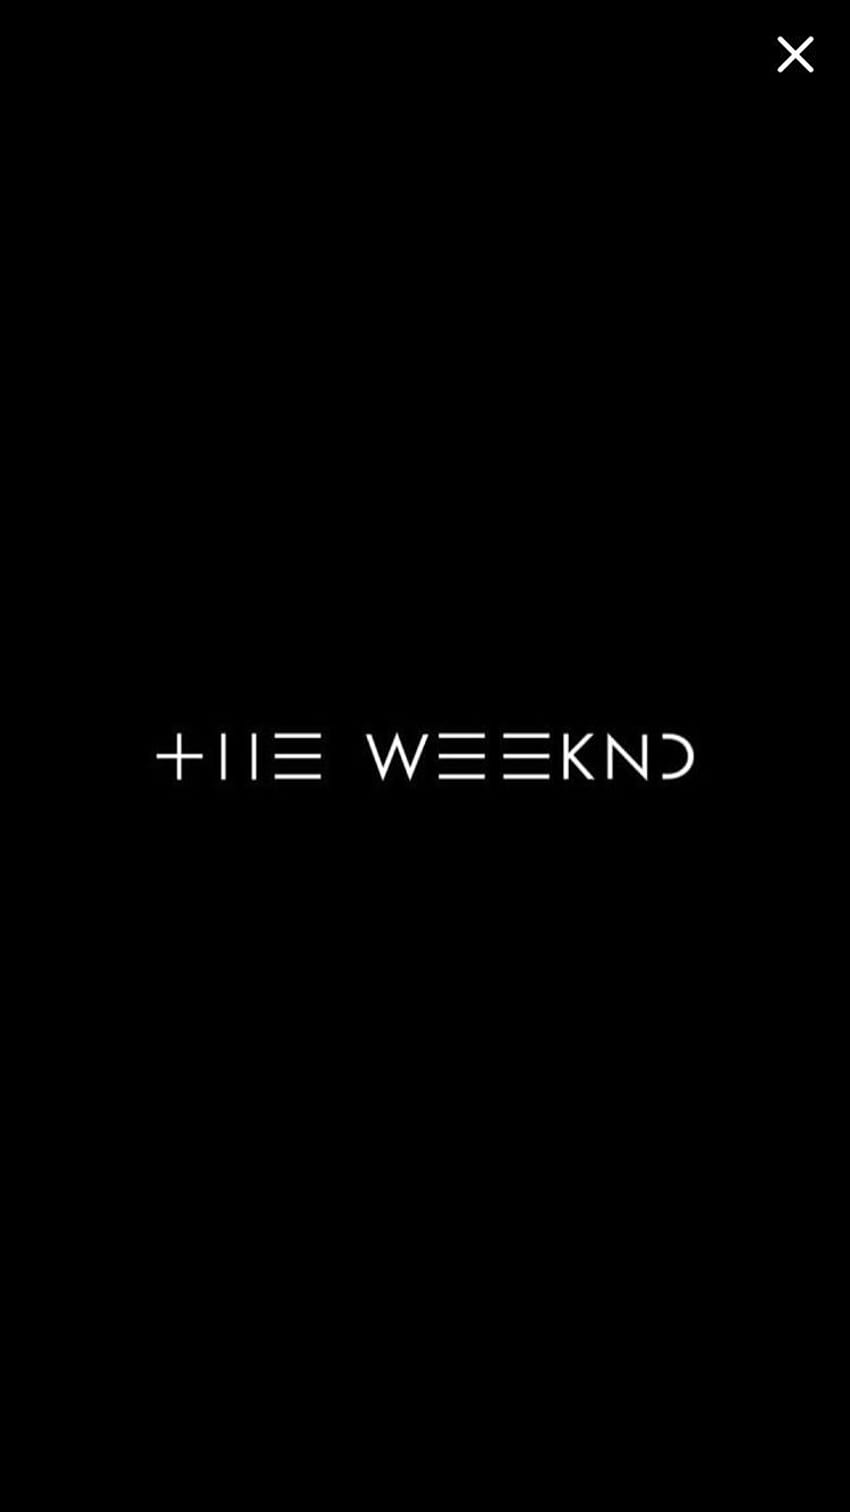 File Name Weeknd, The Weeknd HD phone wallpaper